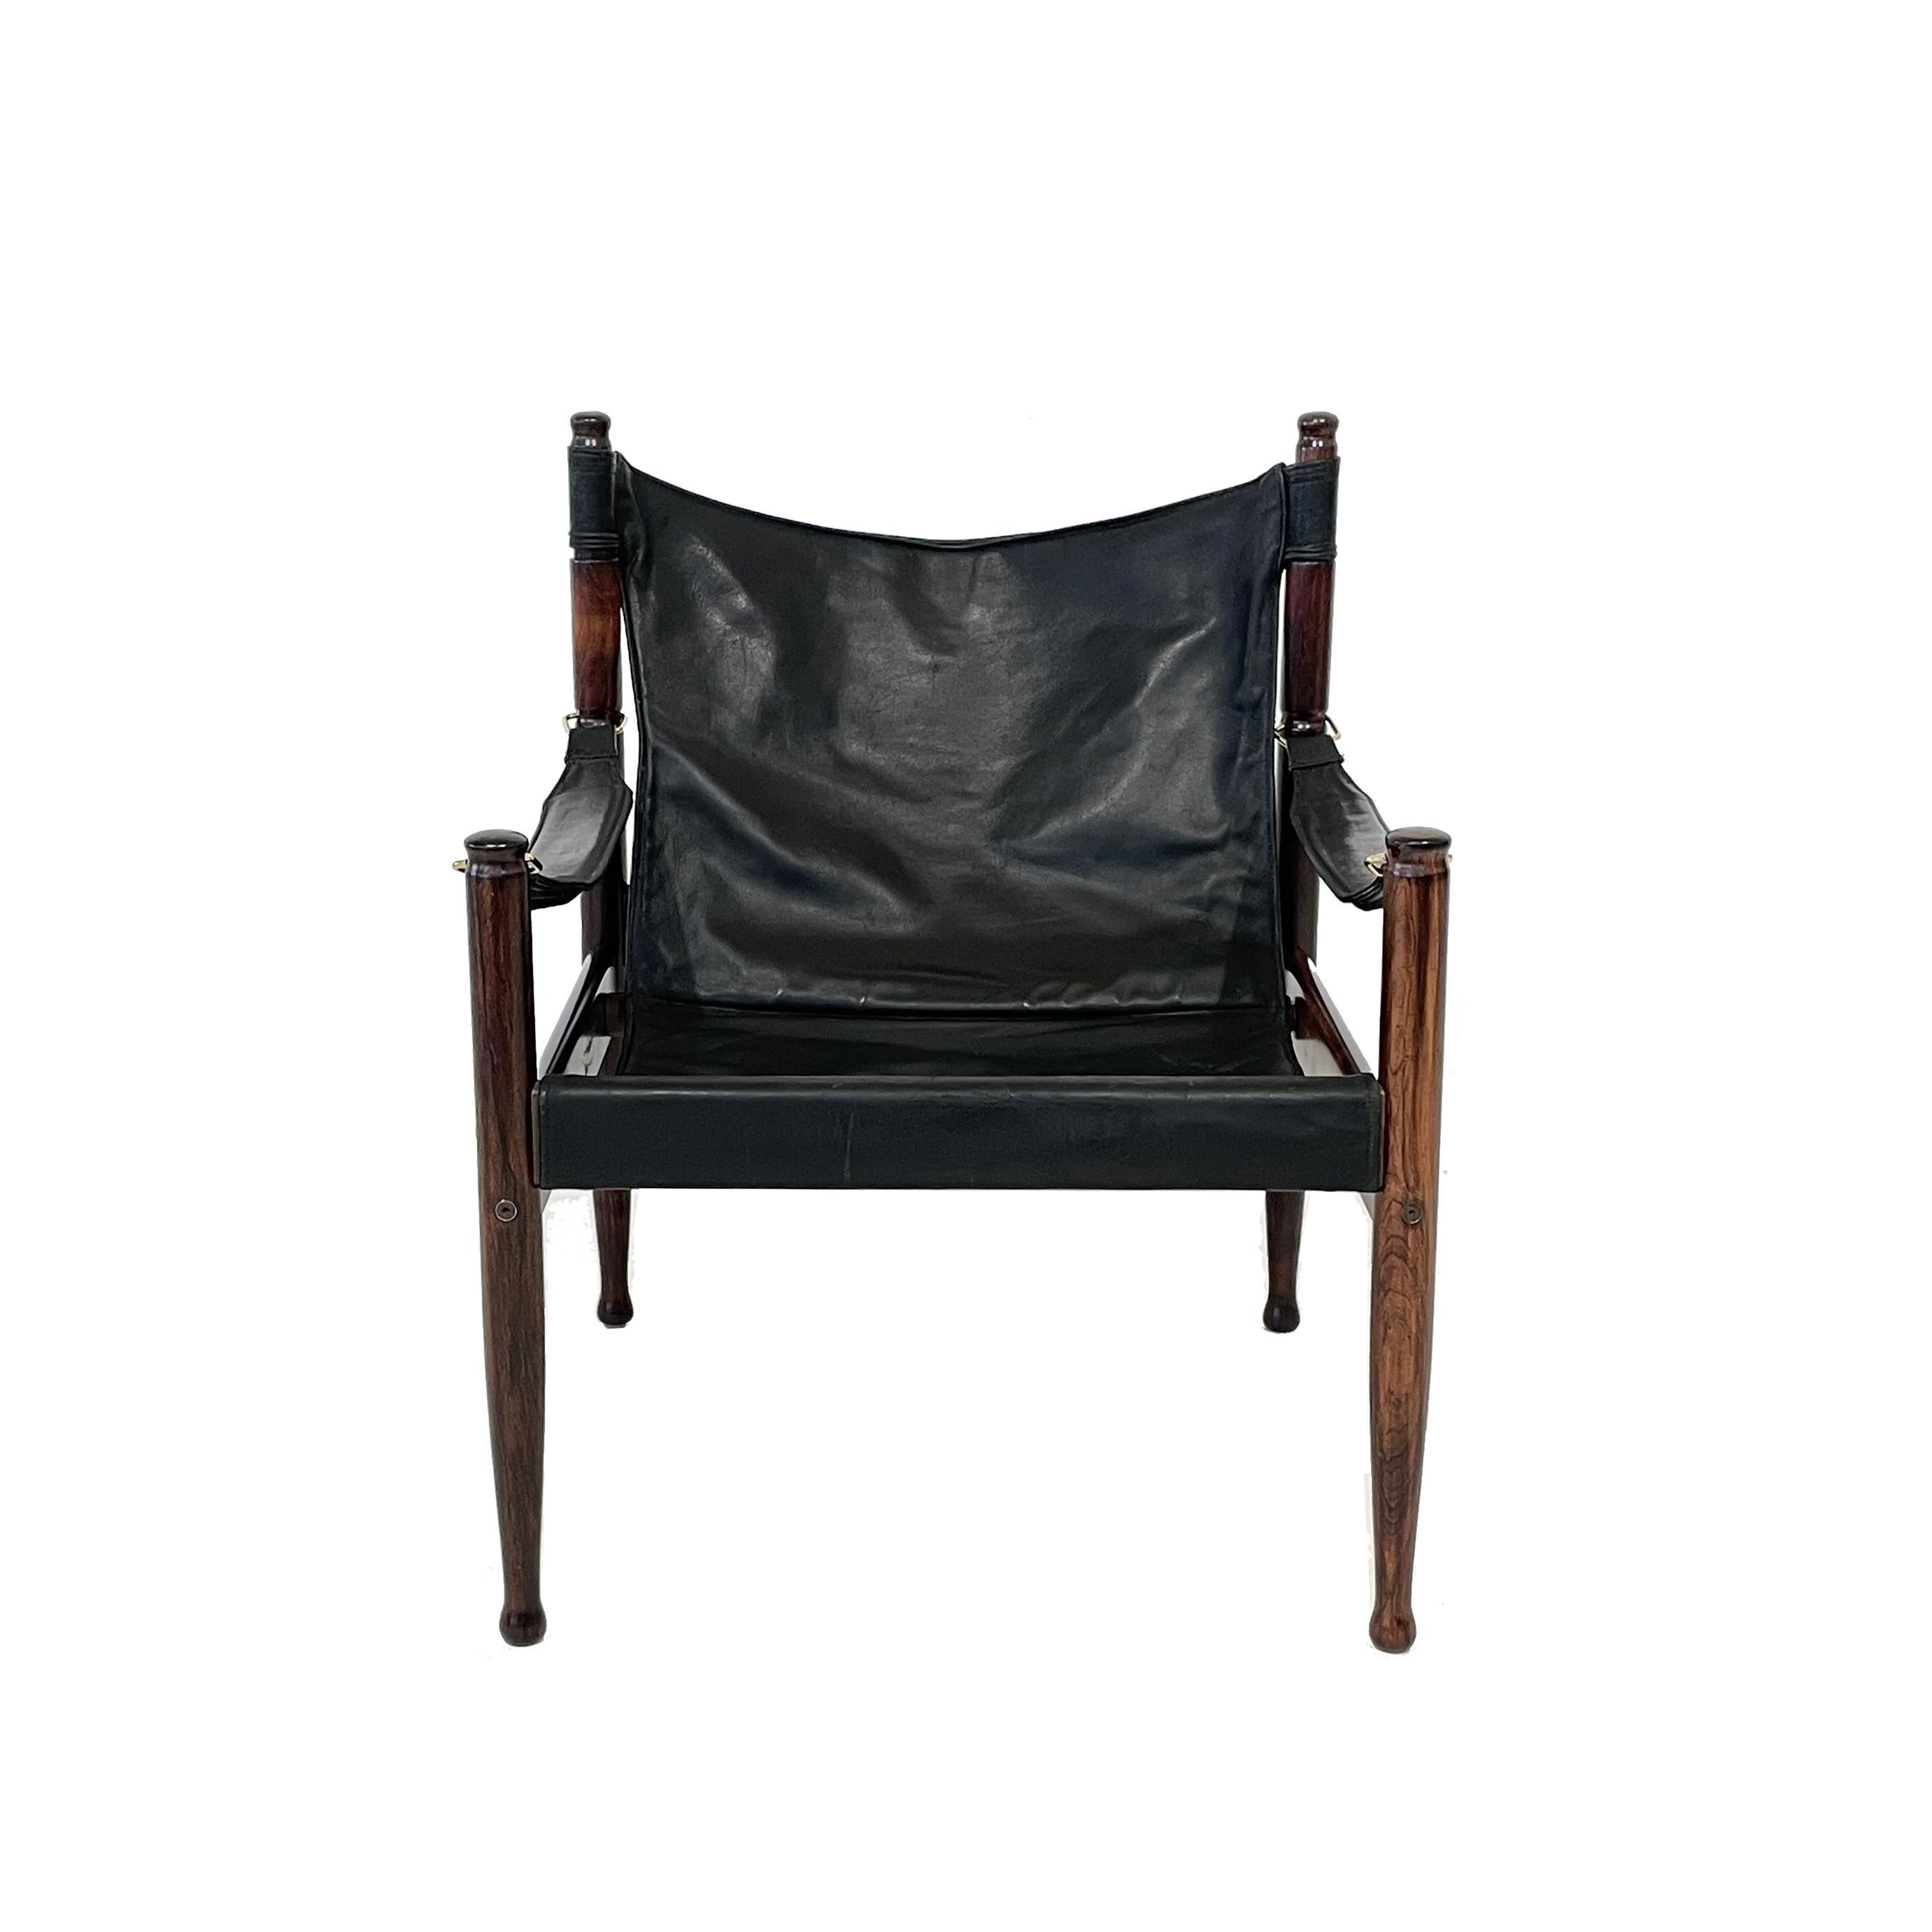 Safari-Sessel, entworfen von Erik Worts für Niels Eilersen, Dänemark, 1960. Hergestellt aus massivem Palisanderholz und Ledersitz mit Messingdetails. Sehr schöner patinierter Ledersitz, aber immer noch in gutem Vintage-Zustand. 

Unten